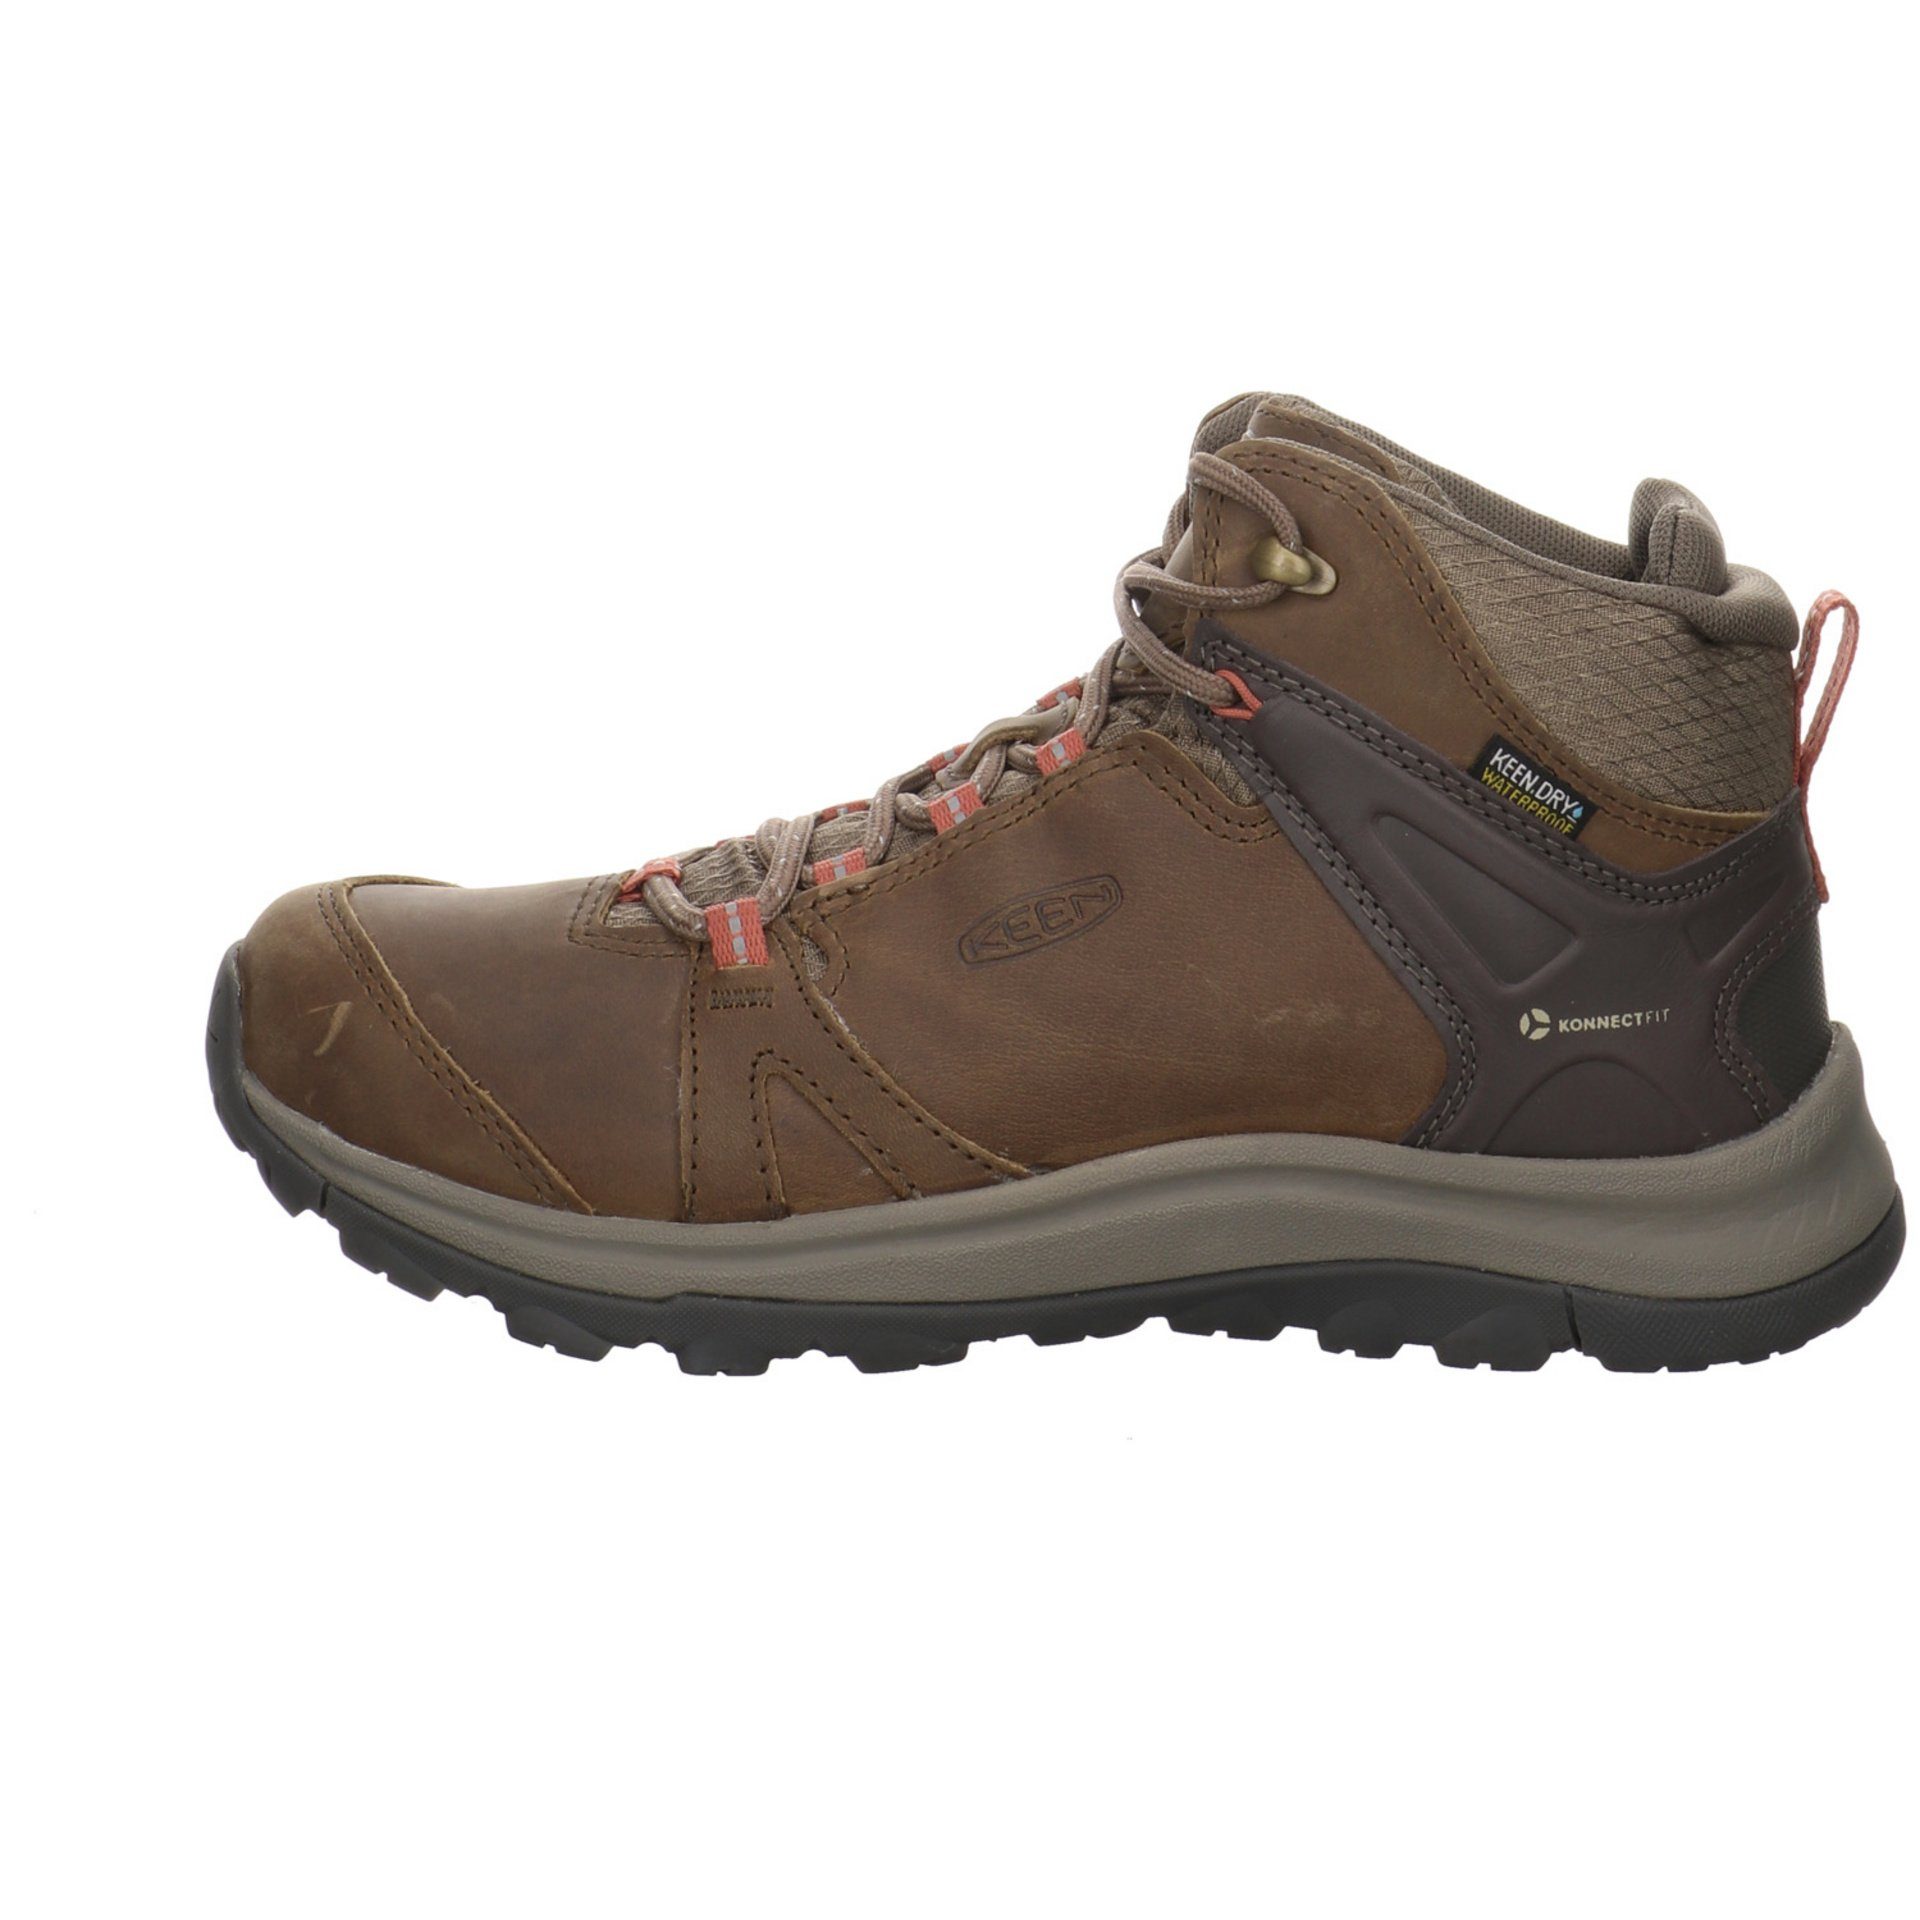 Schuhe Damen Leder-/Textilkombination Outdoor Terradora Outdoorschuh ll Brindle/Redwood Keen Outdoorschuh